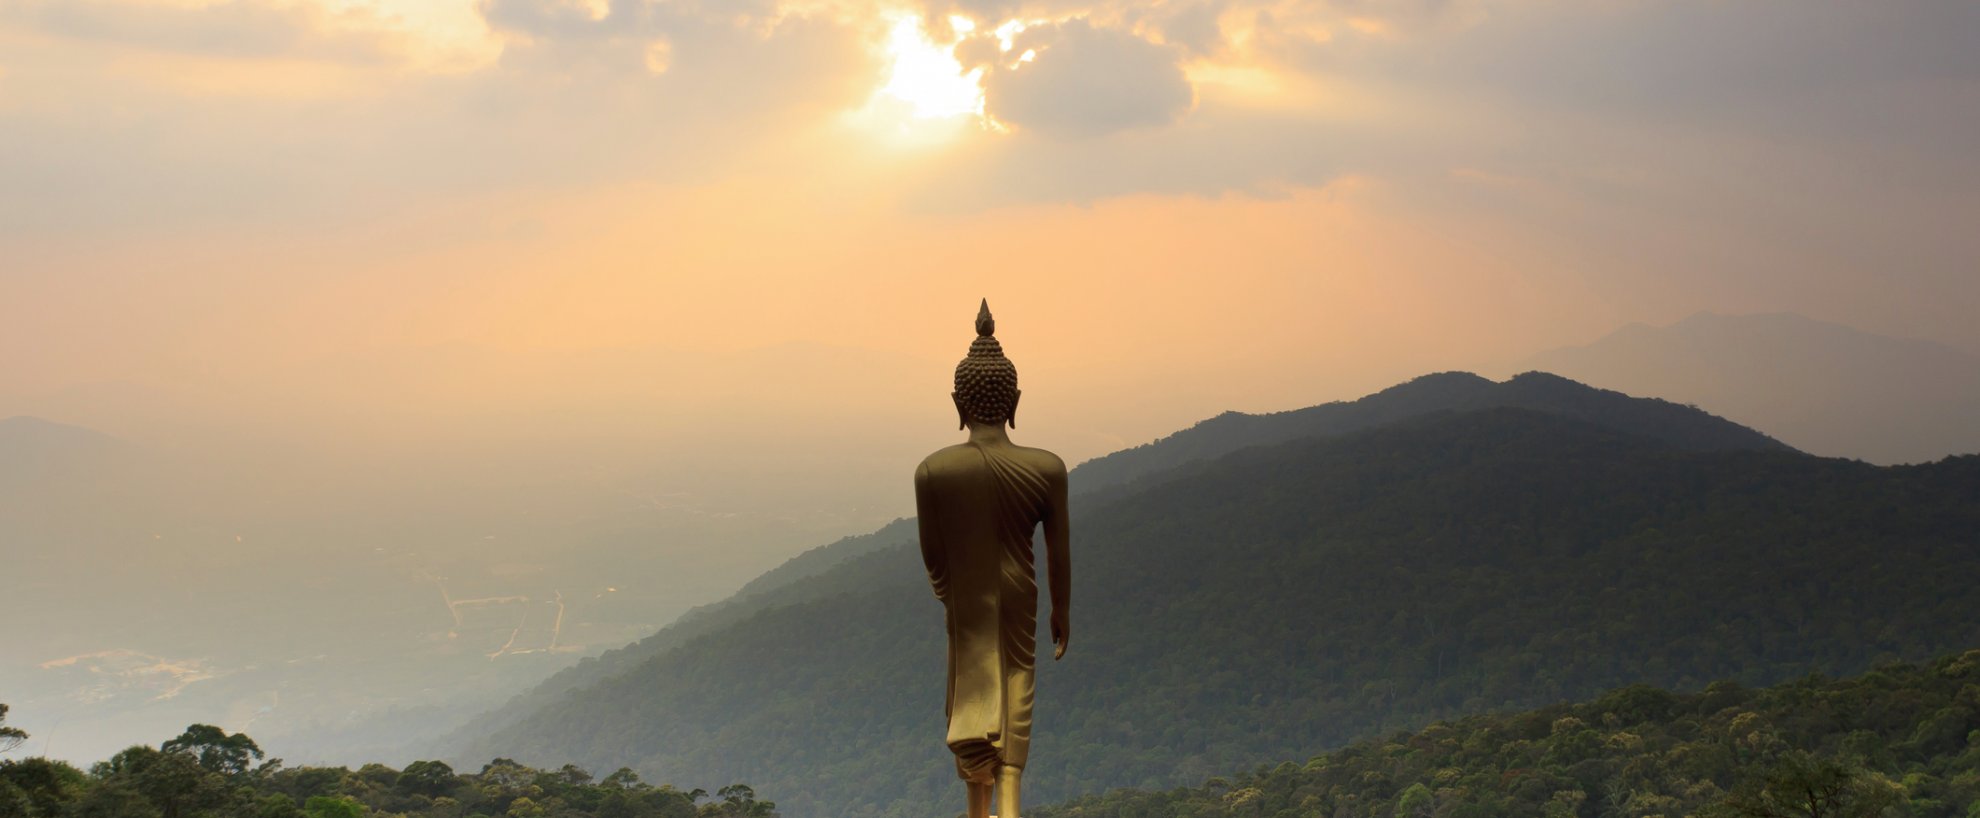 Urlaub Reise Reisen Kur Kuren Buddha Buddha-Statue Wald 